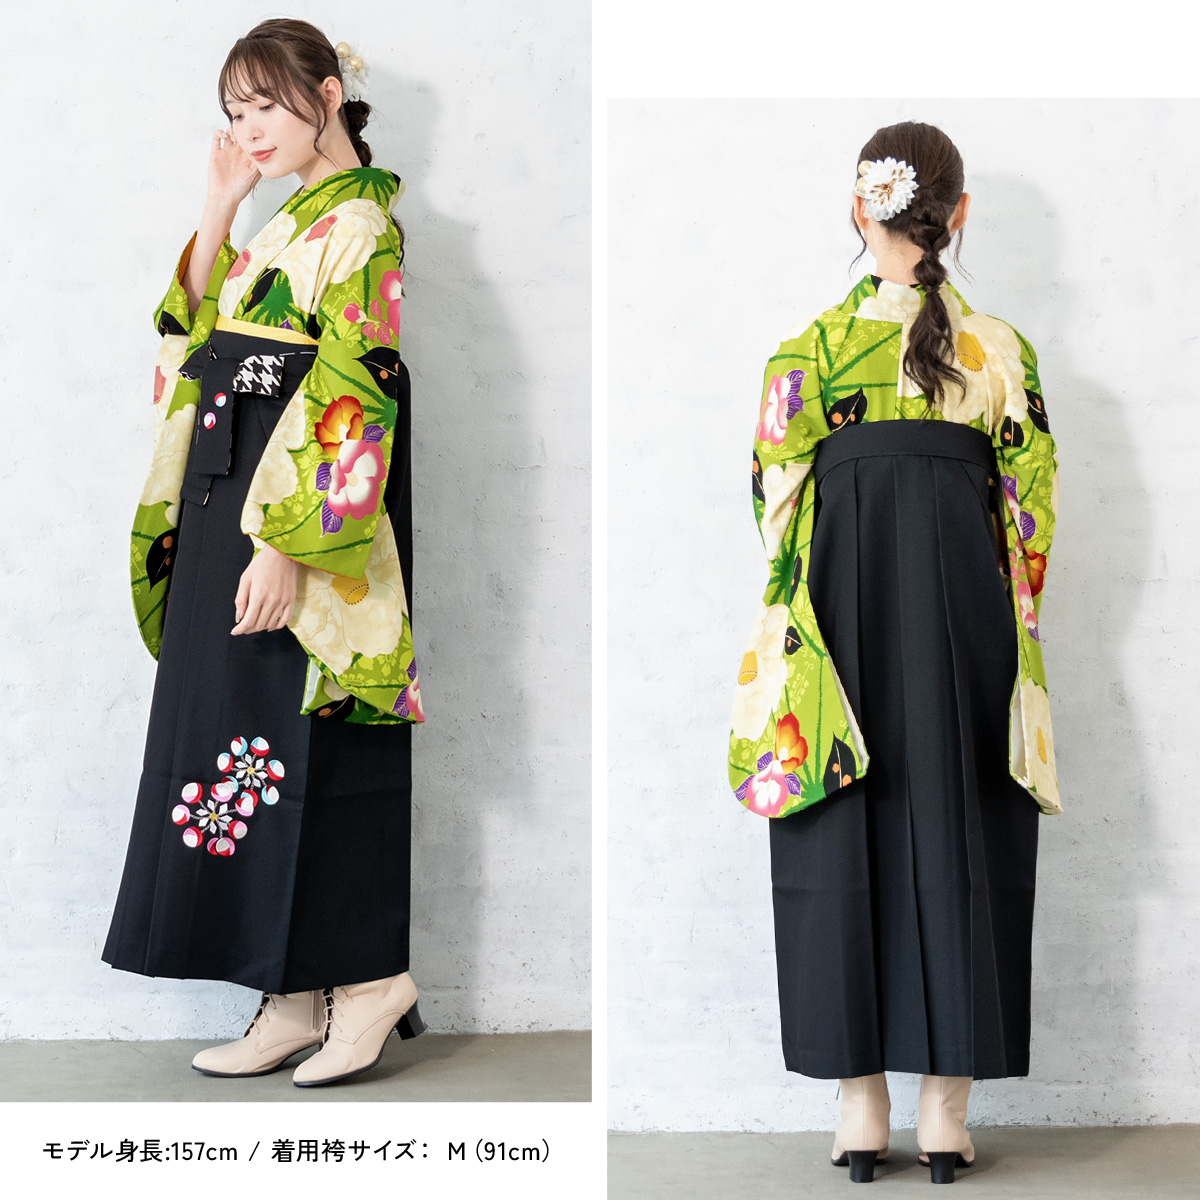 レンタル 卒業式 袴 女性 袴セット 黄緑 グリーン 黒 椿 花 麻の葉 紅 